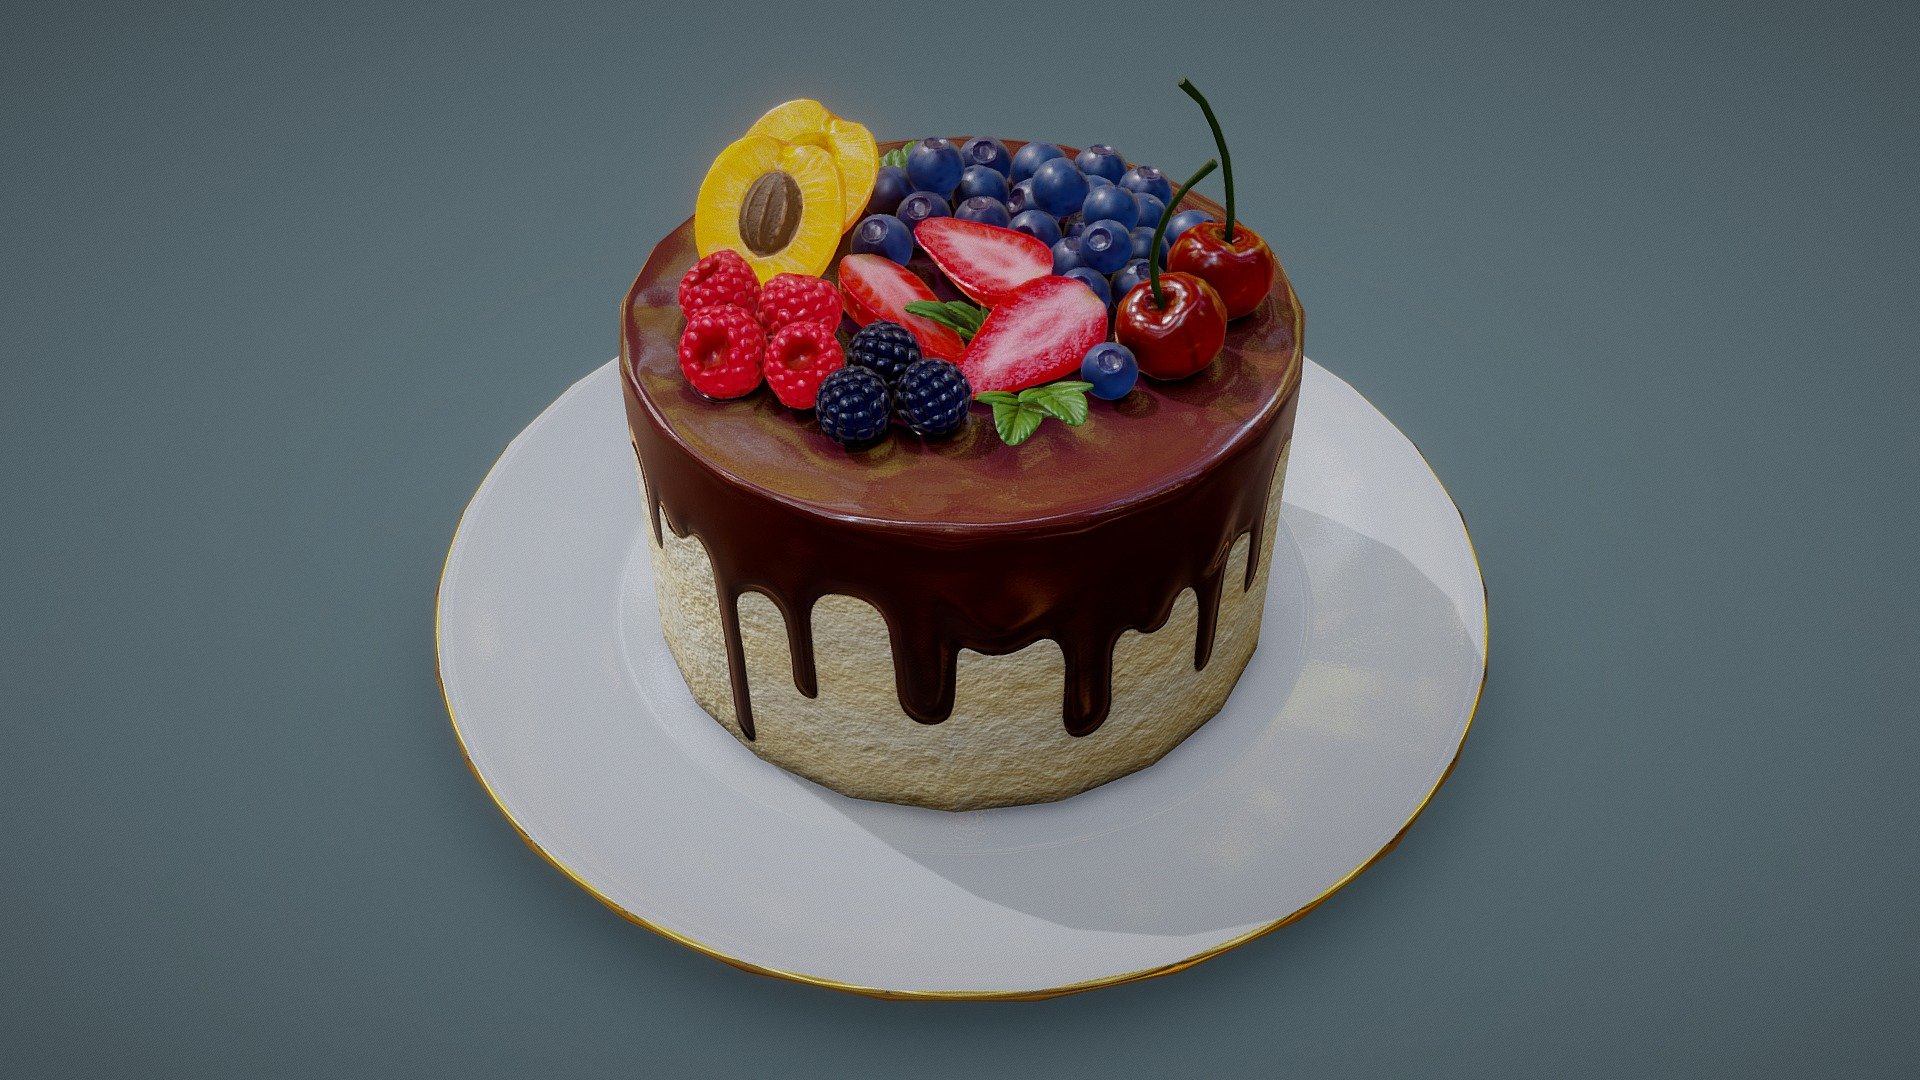 Rich Berry Cake - 3D model by F3dorov [018a1c8] - Sketchfab